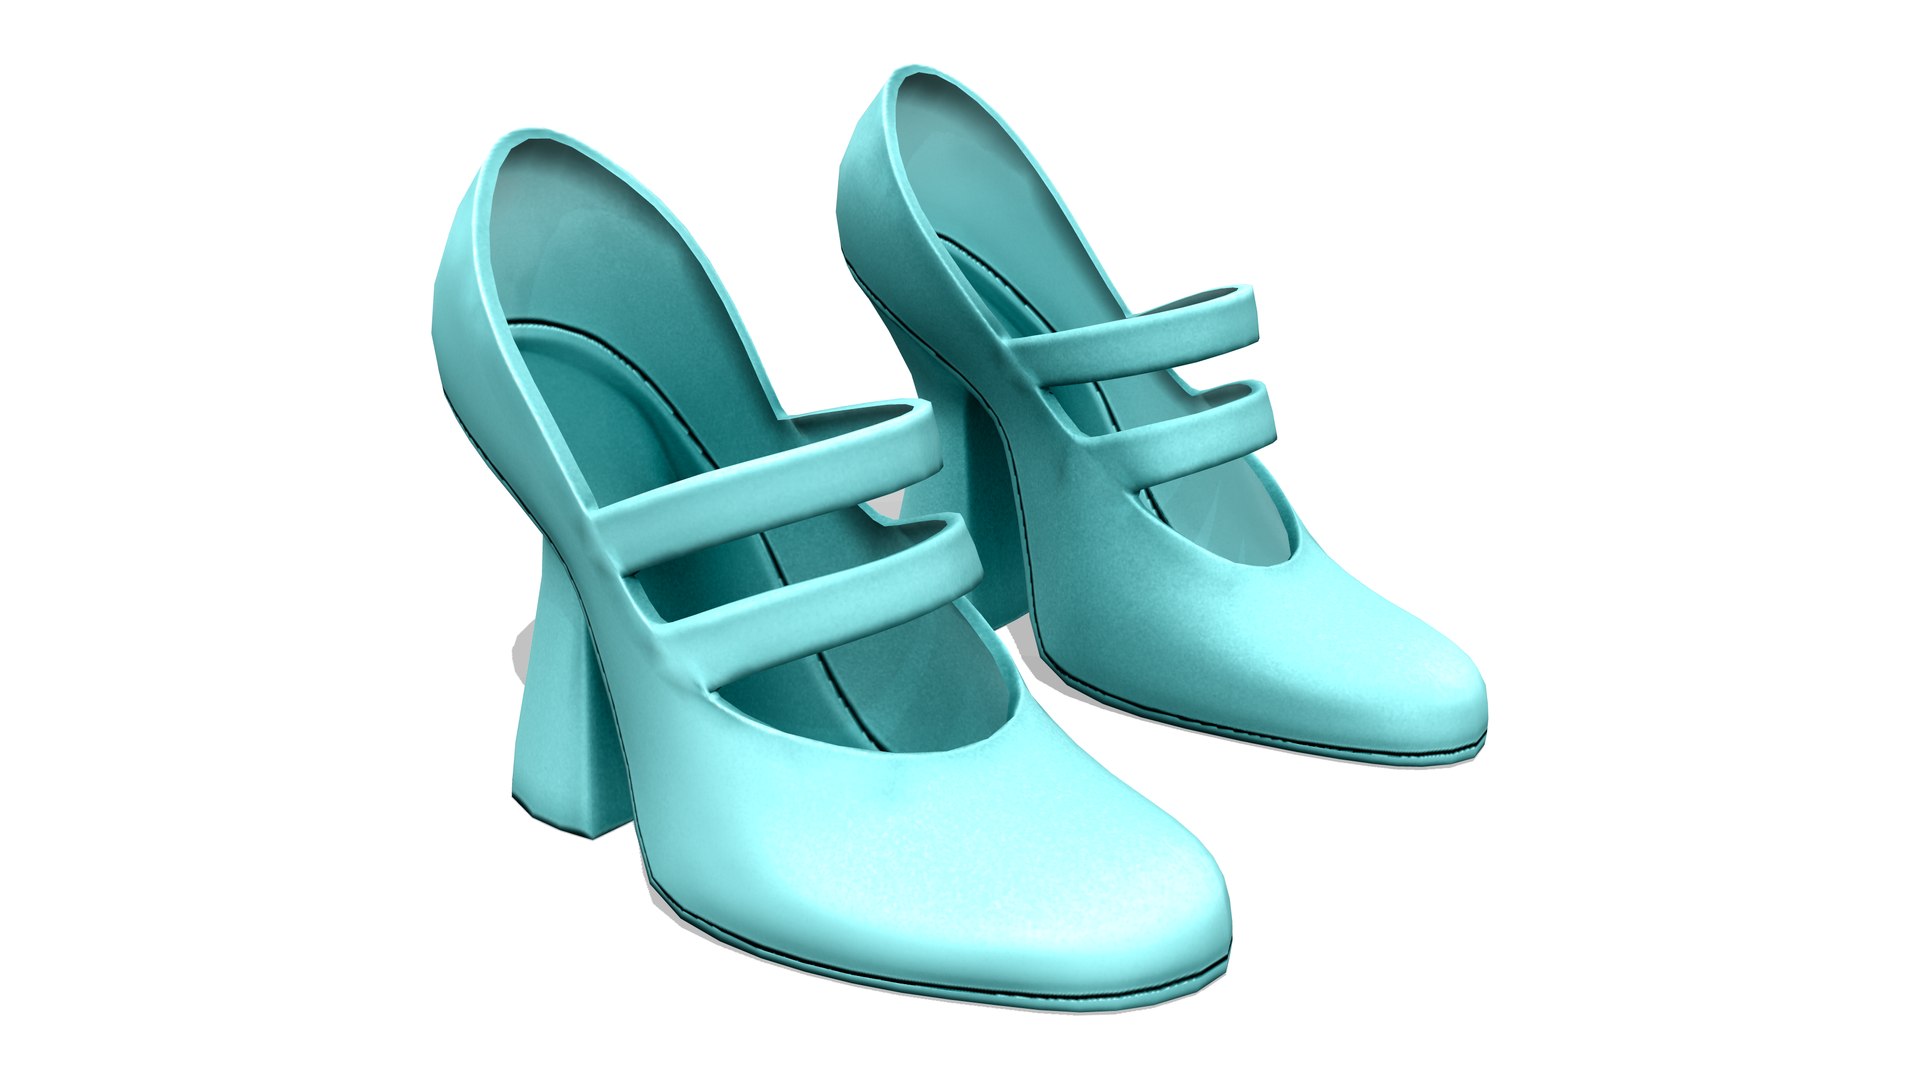 1960s Retro Marry Jane Pumps High Heel Shoes 3D Model - TurboSquid 1960511